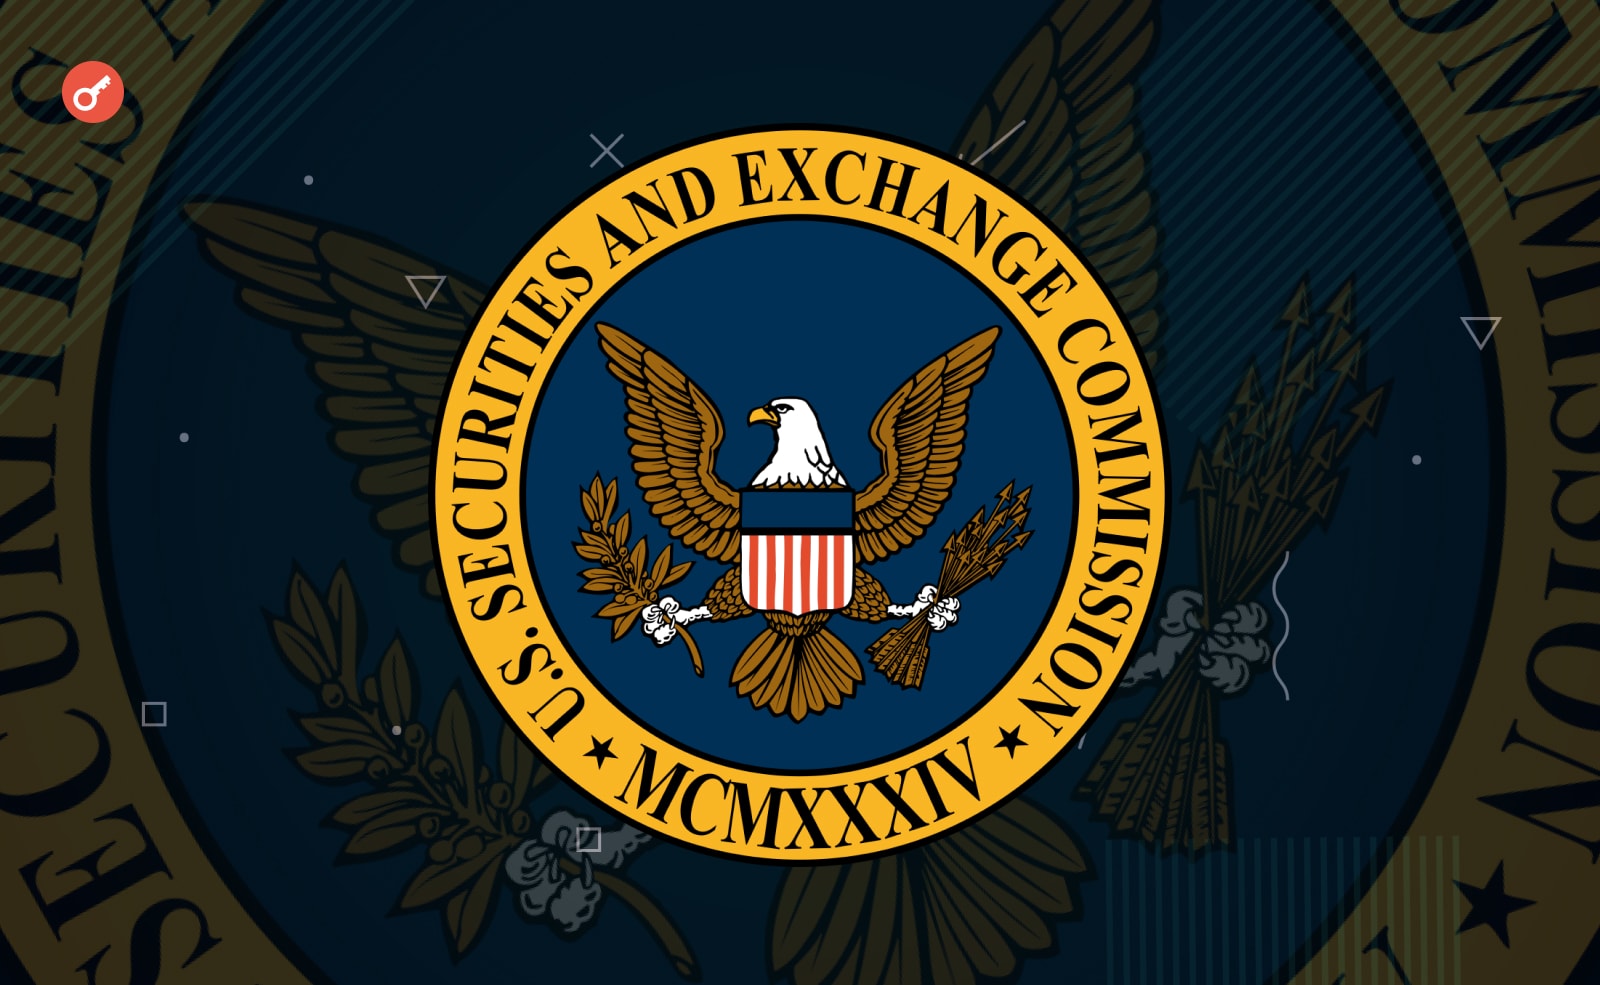 SEC перевіряють, як інвест-консультанти зберігають криптовалюту клієнтів. Головний колаж новини.